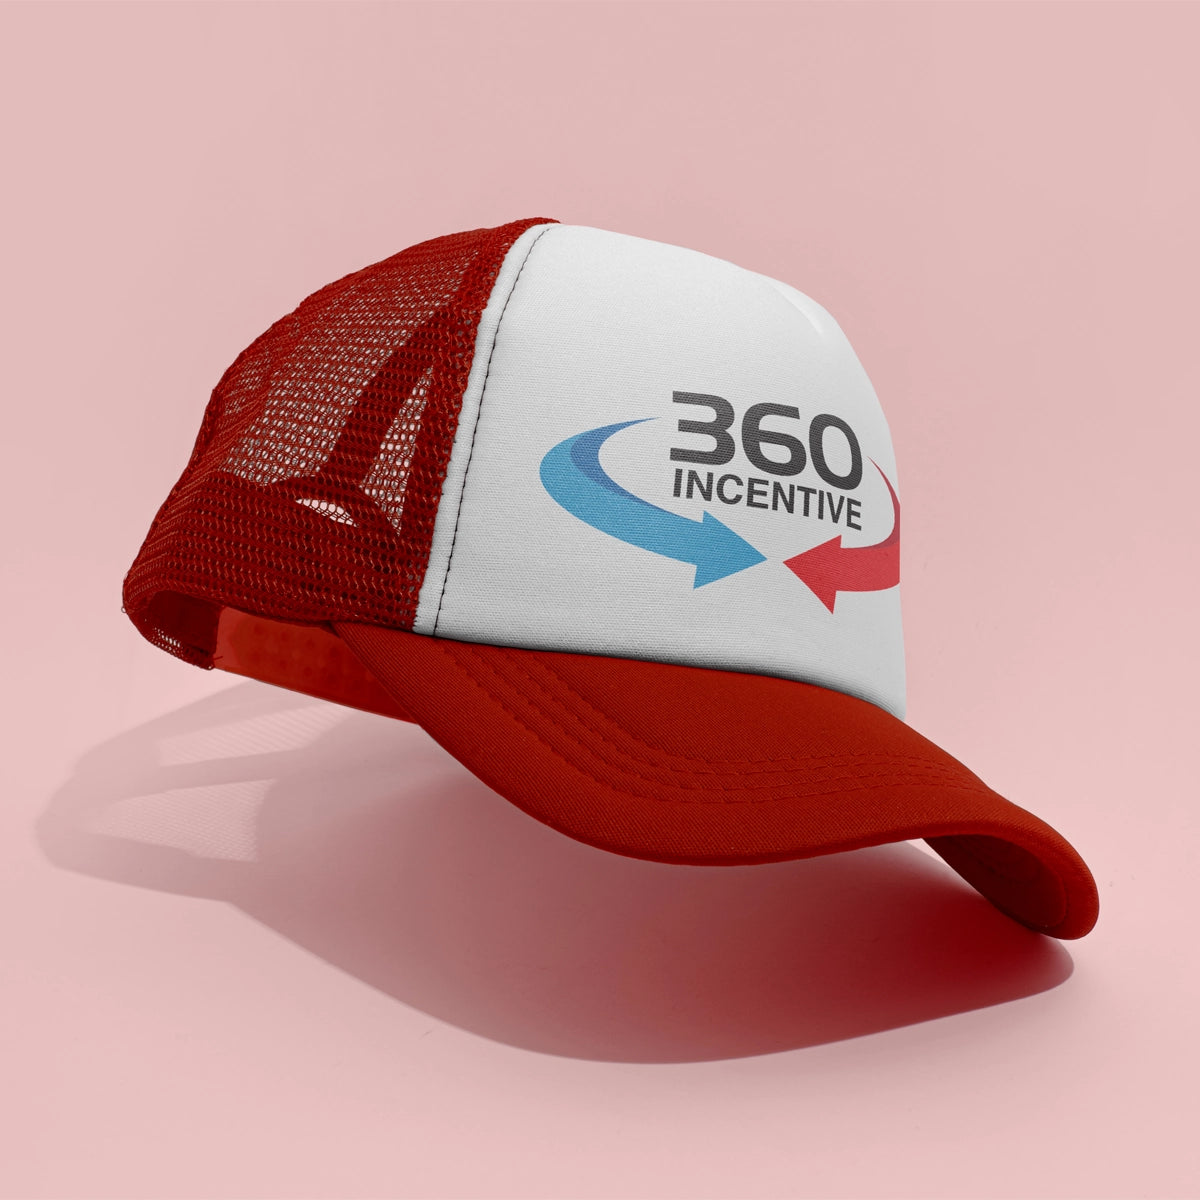 360incentive.com